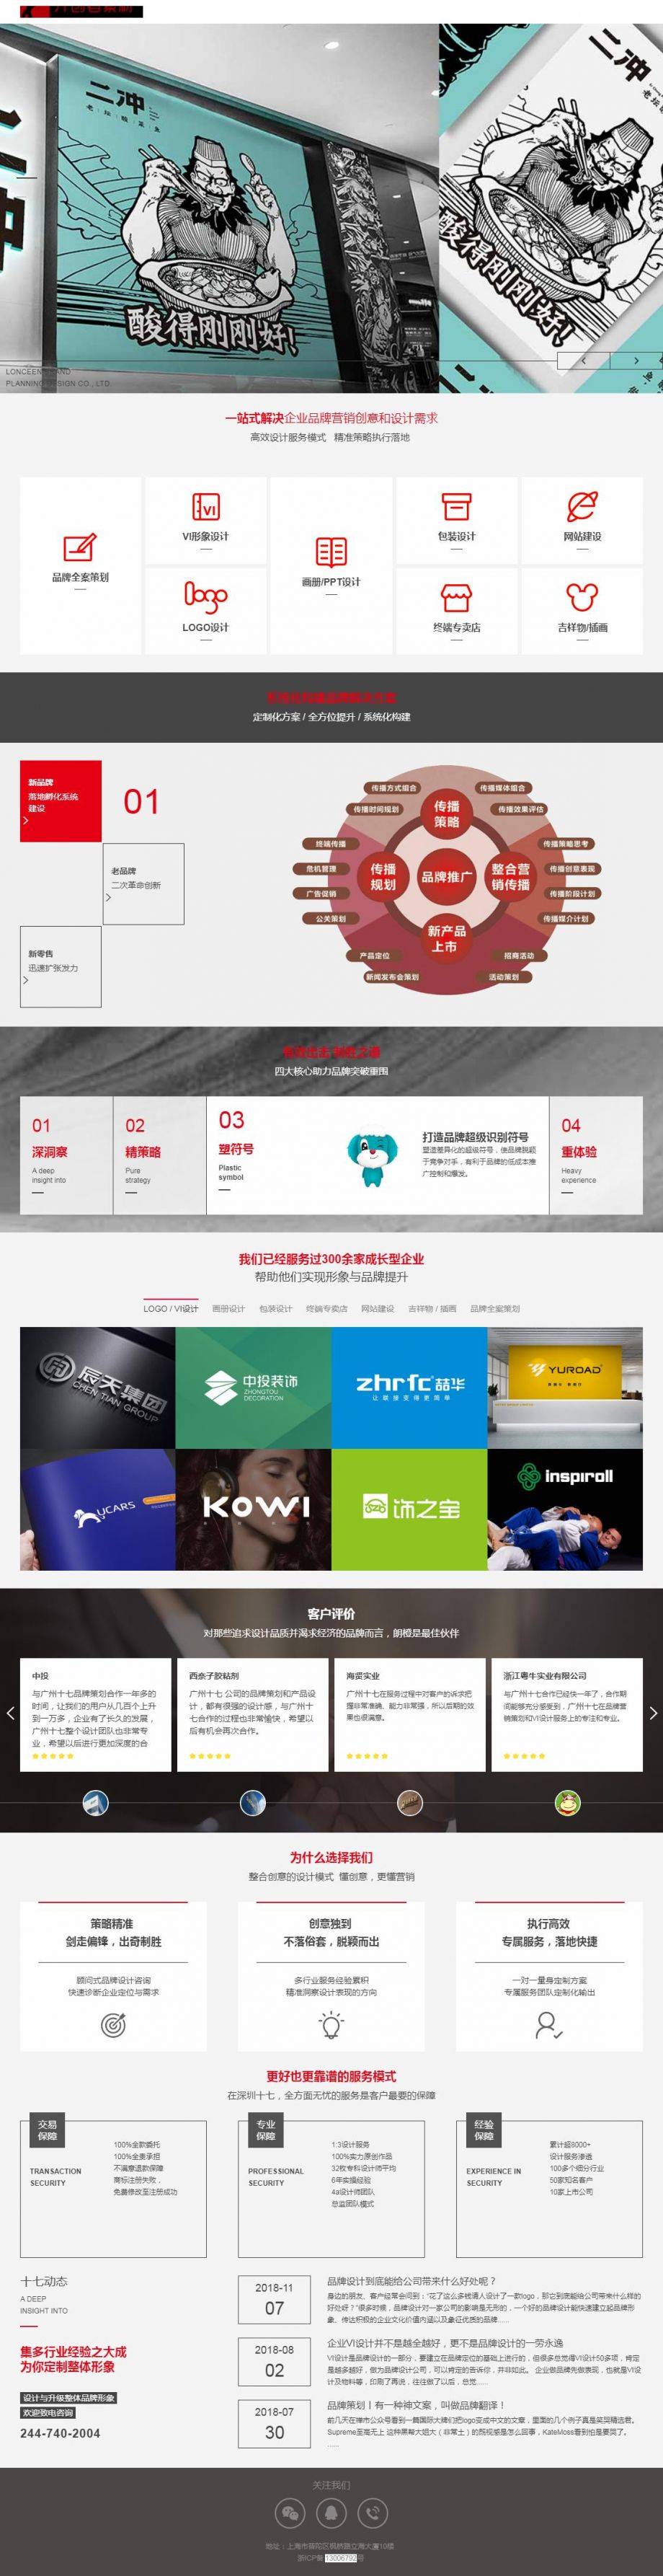 HTML产品创意广告设计公司网站模板